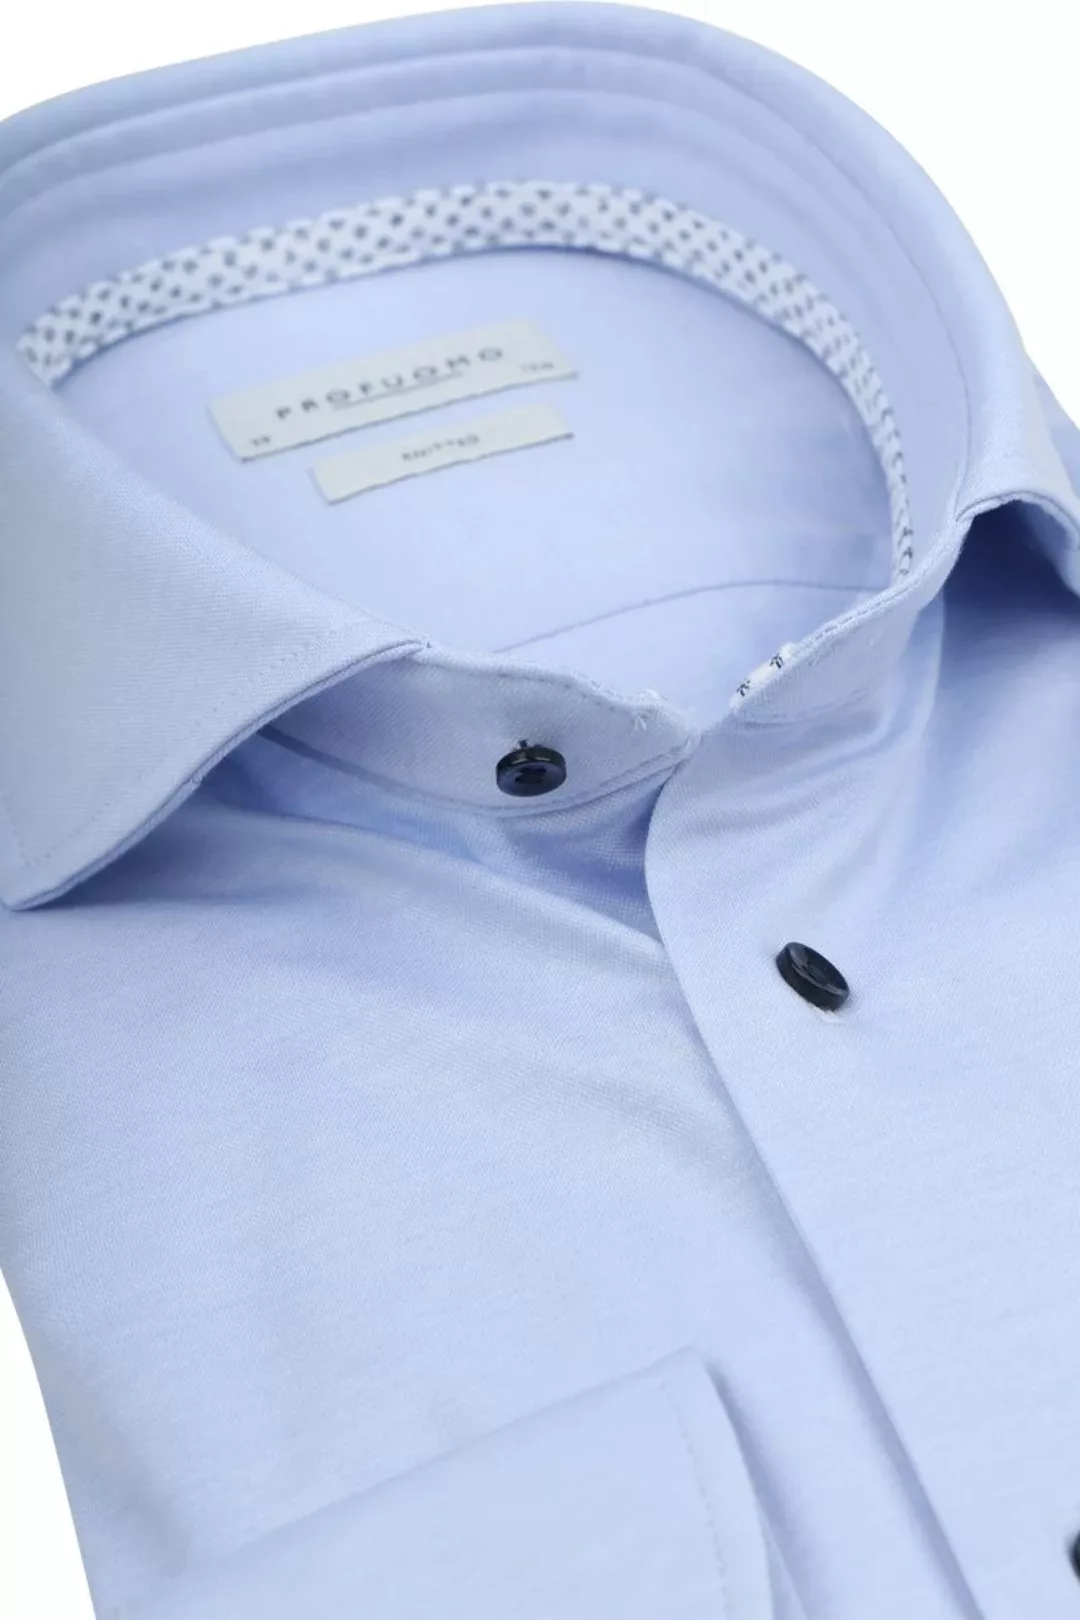 Profuomo Hemd Knitted Slim Fit Hellblau Melange - Größe 37 günstig online kaufen